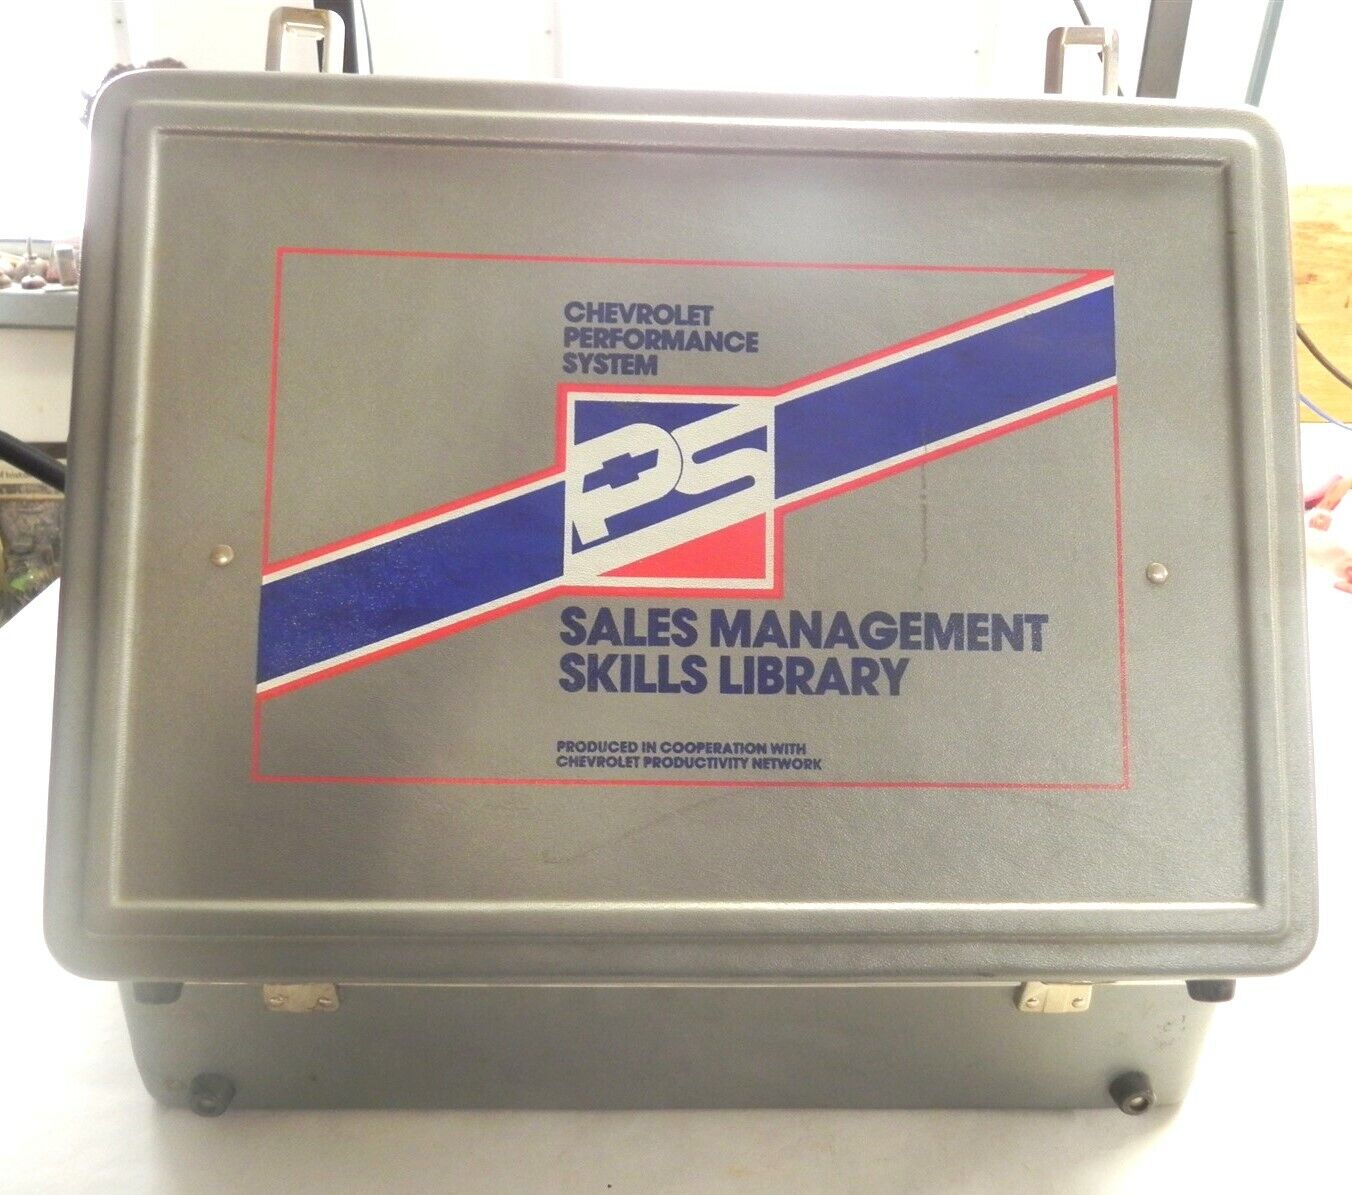 1986 CHEVROLET GM DEALERSHIP SALES MANAGEMENT KIT BINDER CASSETTES LAZER DISCS